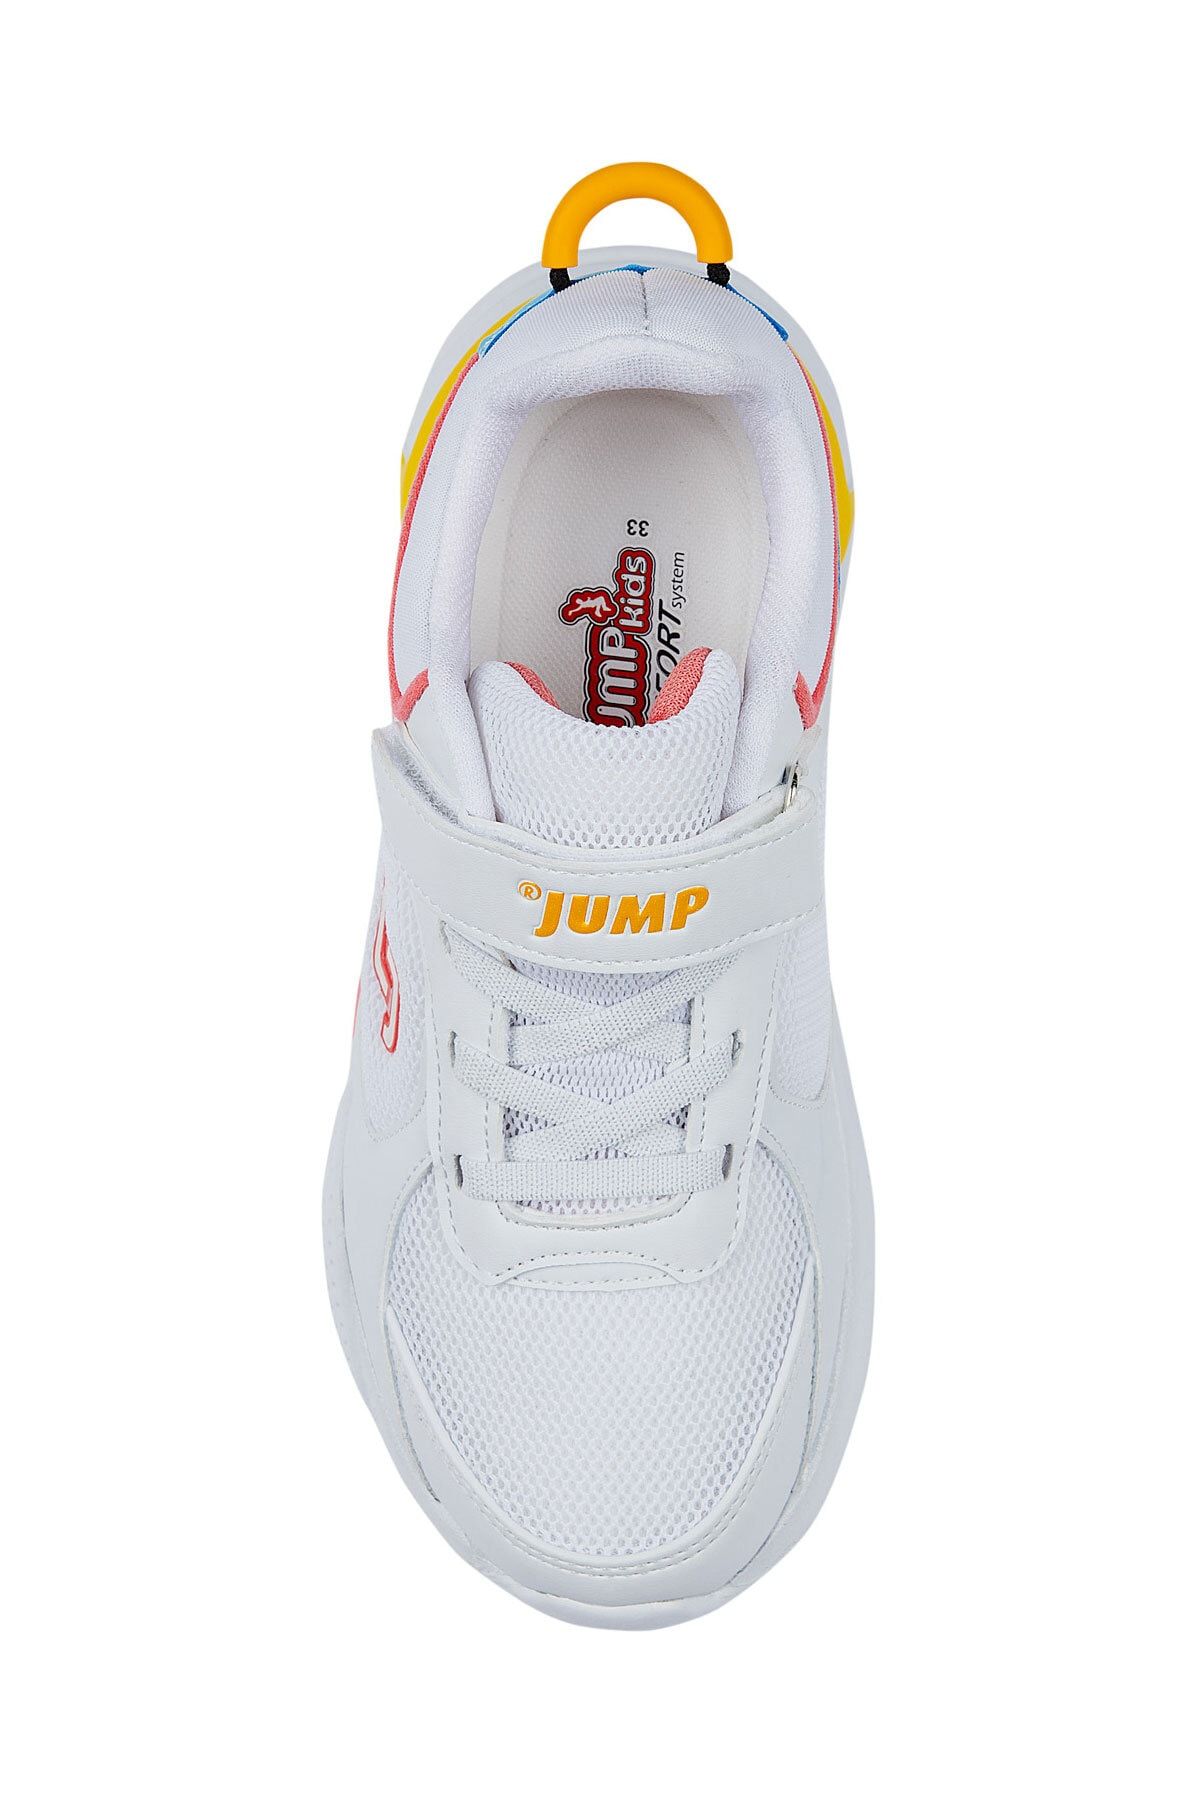 24931 Beyaz - Bebe Mavi - Sarı - Pembe Kız Çocuk Yazlık Günlük Yürüyüş Sneaker Spor Ayakkabı